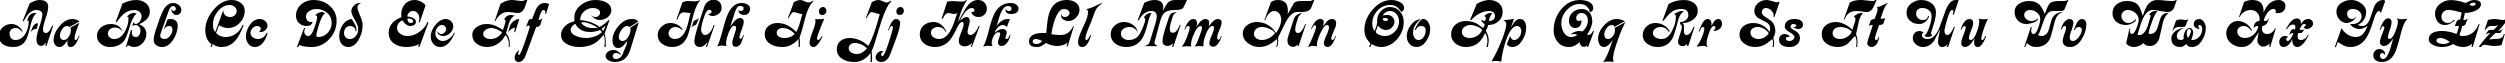 Пример написания английского алфавита шрифтом Fleetwood Regular